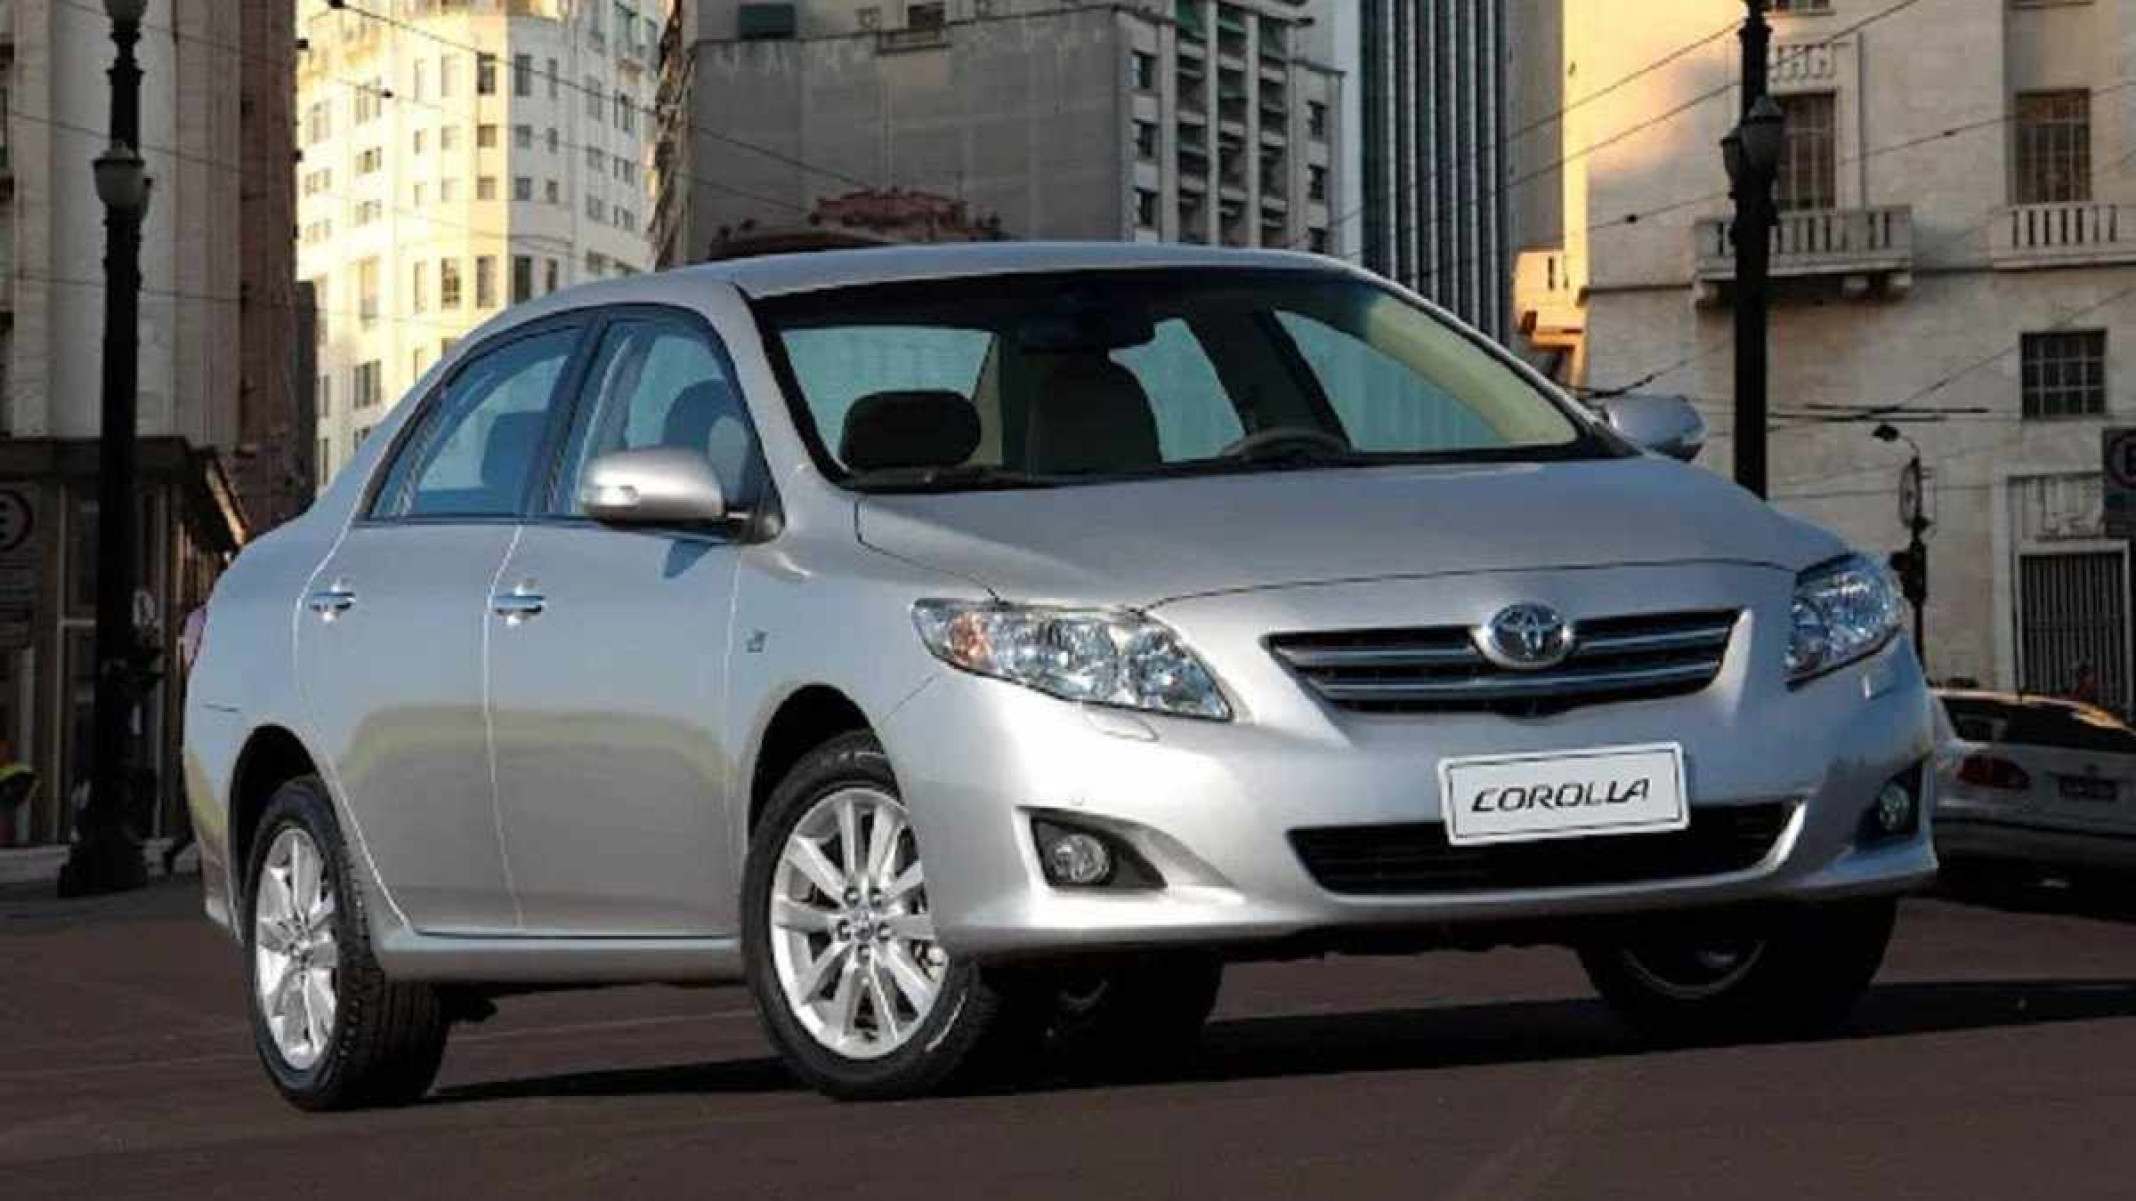 Leilão vende 14 carros Toyota Corolla por preço abaixo da tabela